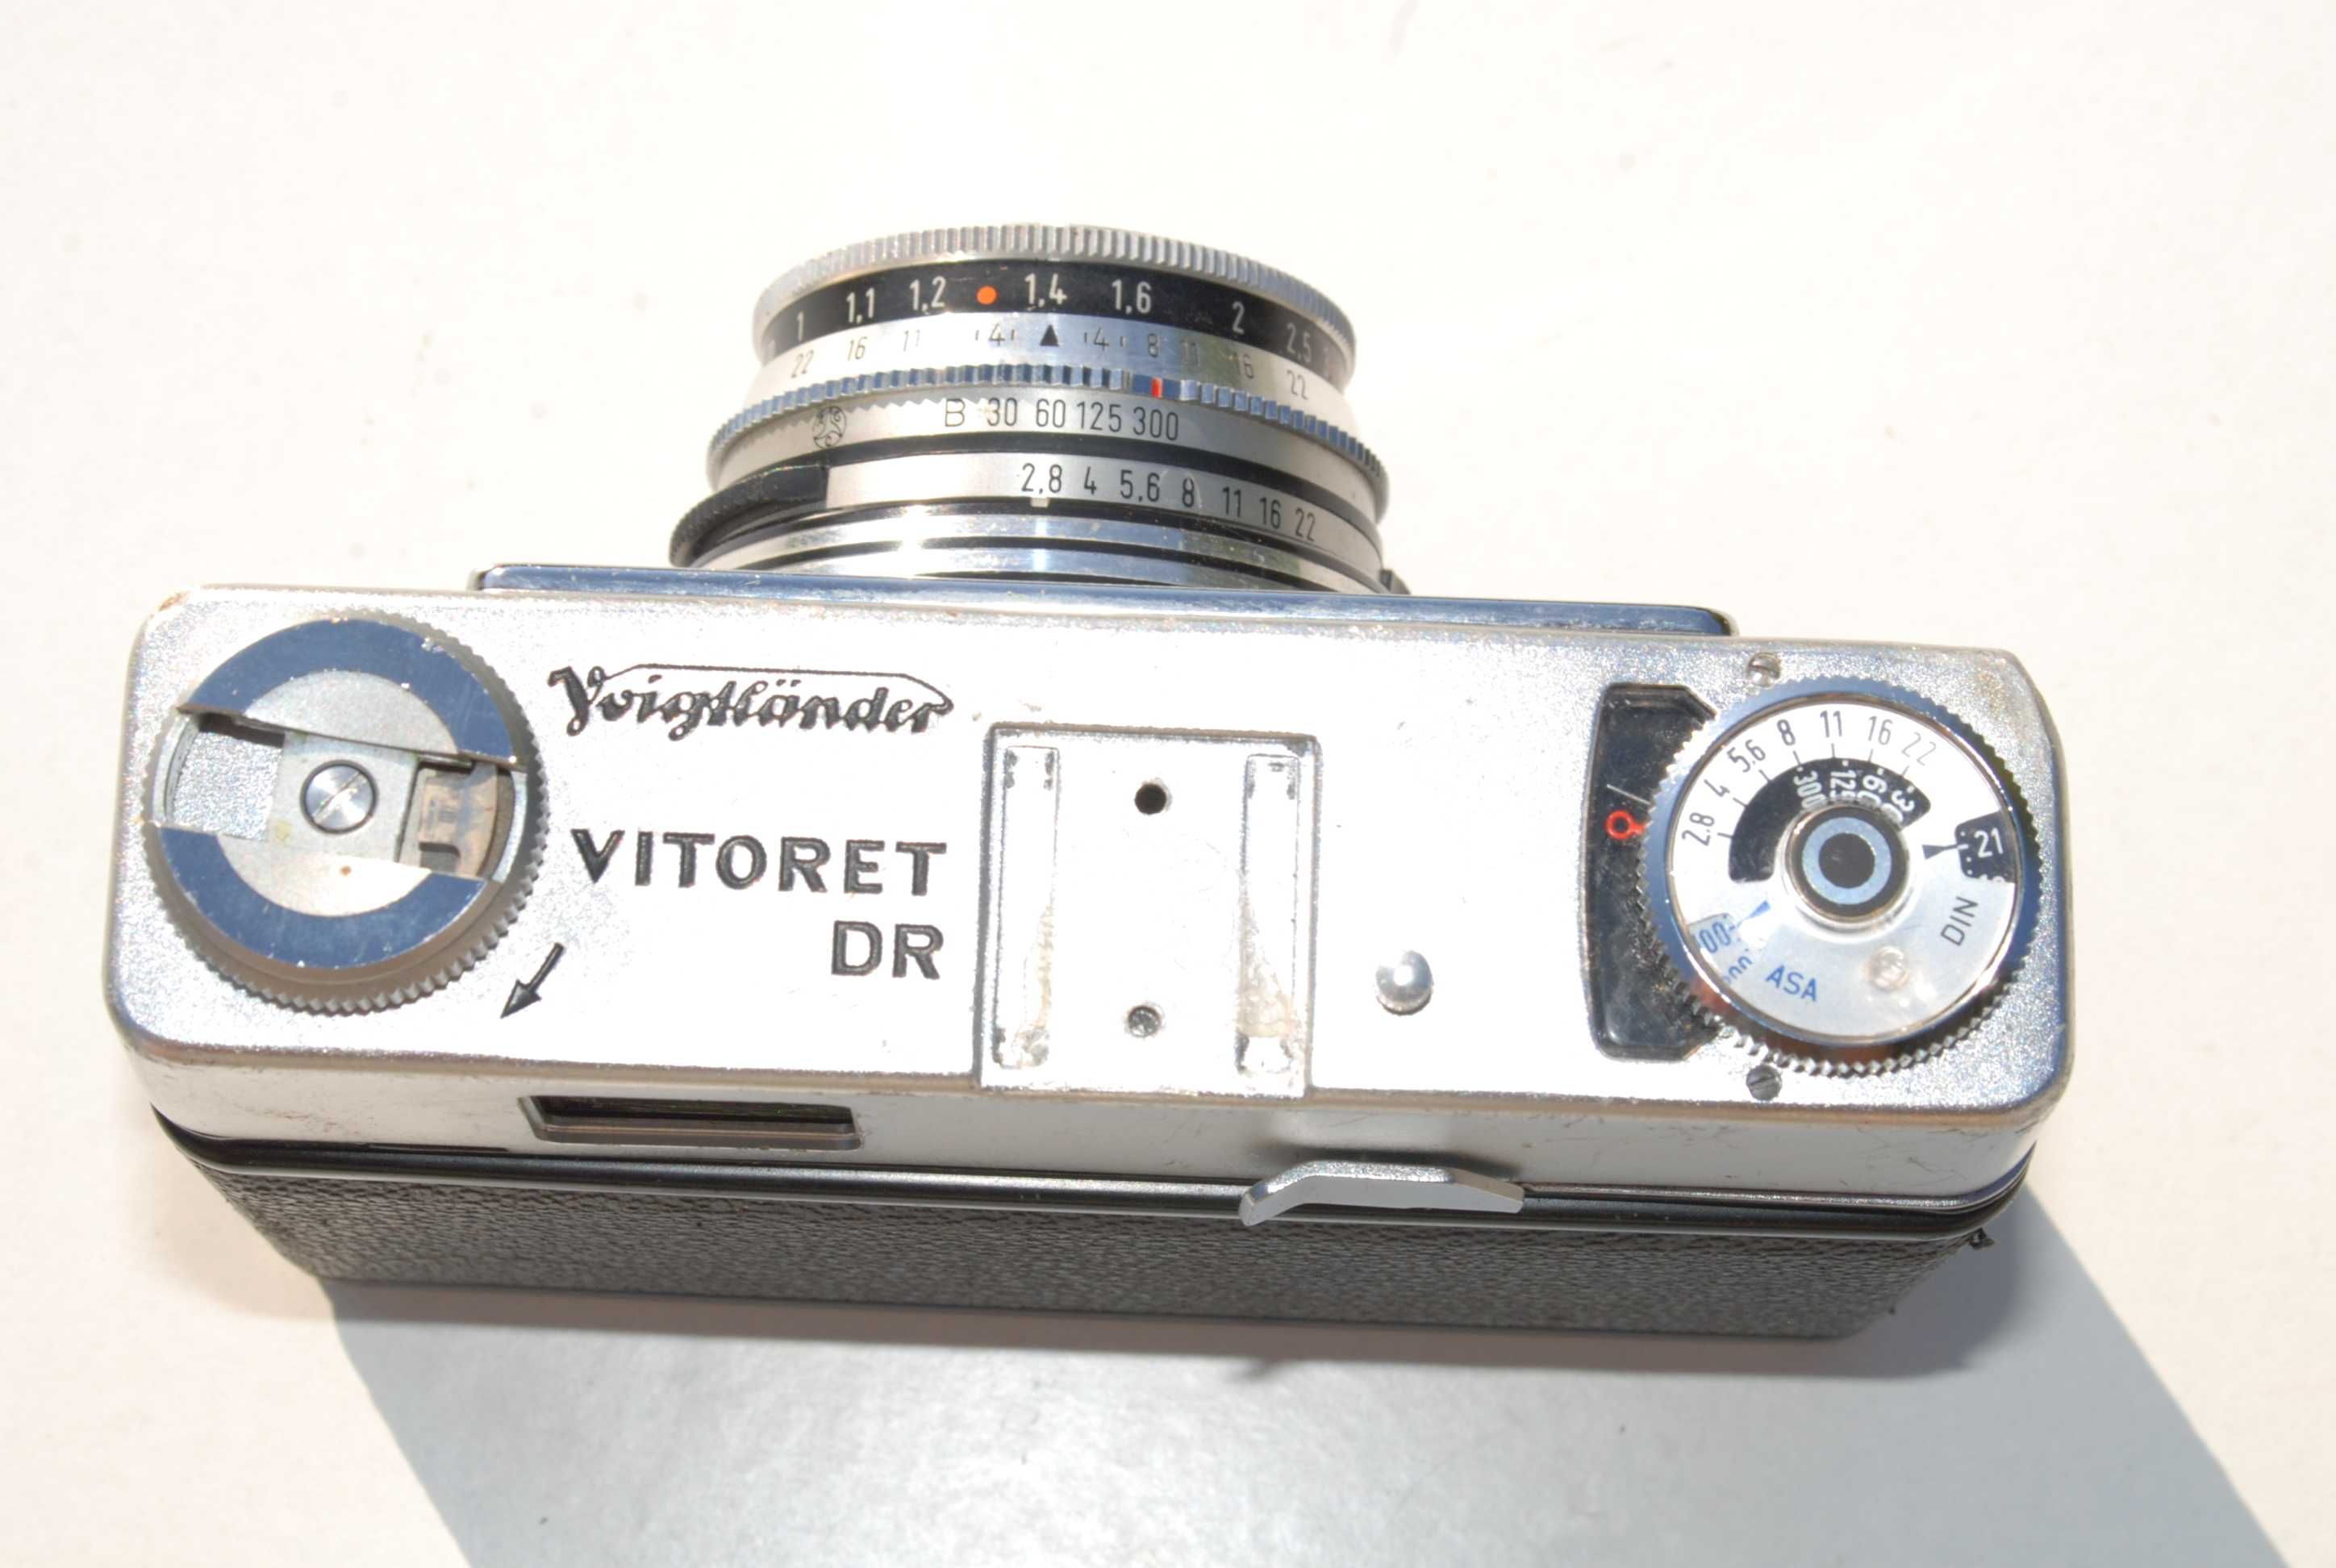 Stary aparat Voigtlander VITORET DR antyk zabytek